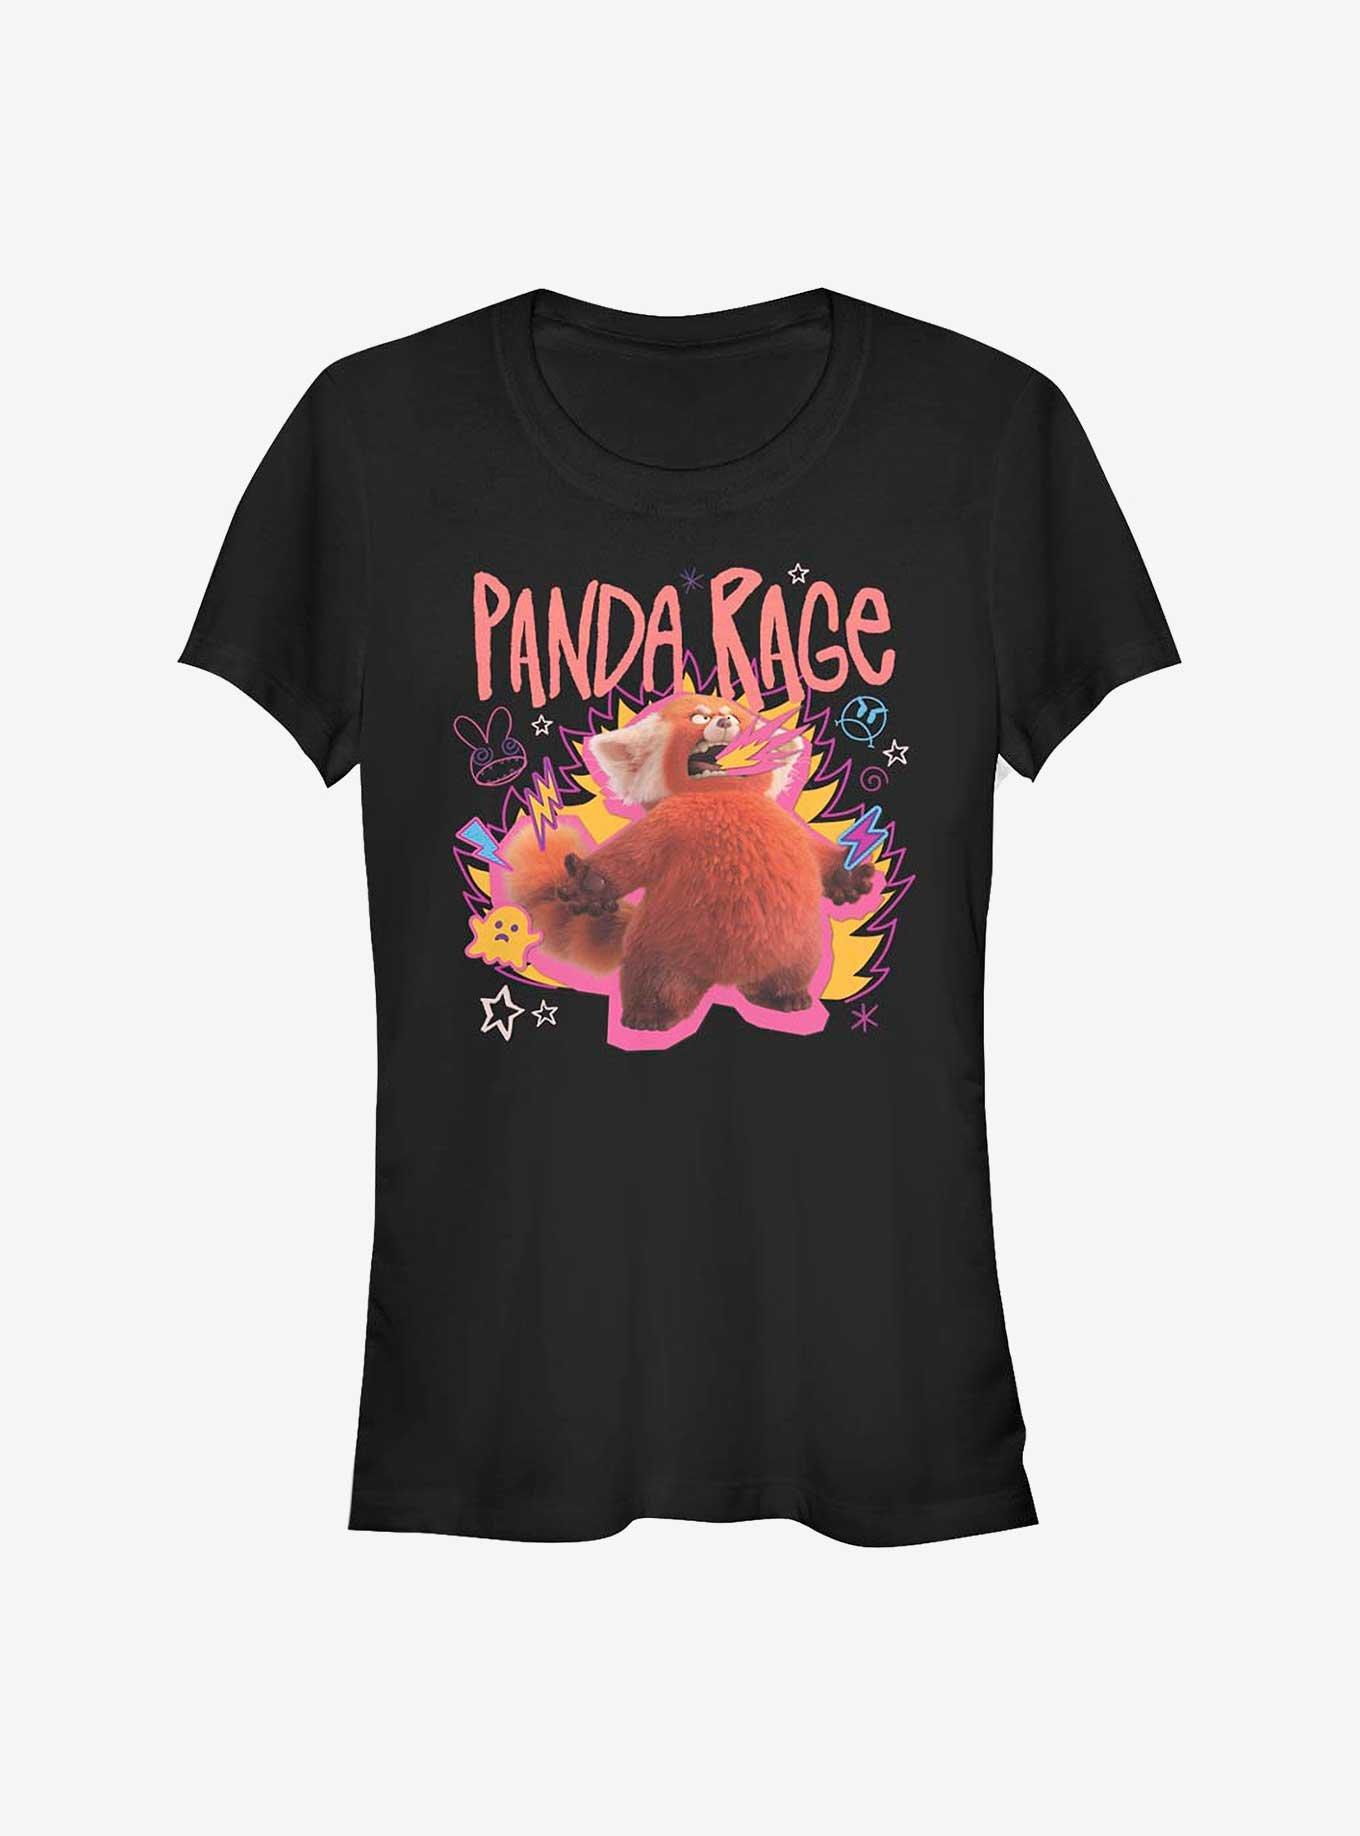 Disney Pixar Turning Red Panda Rage Girls T-Shirt